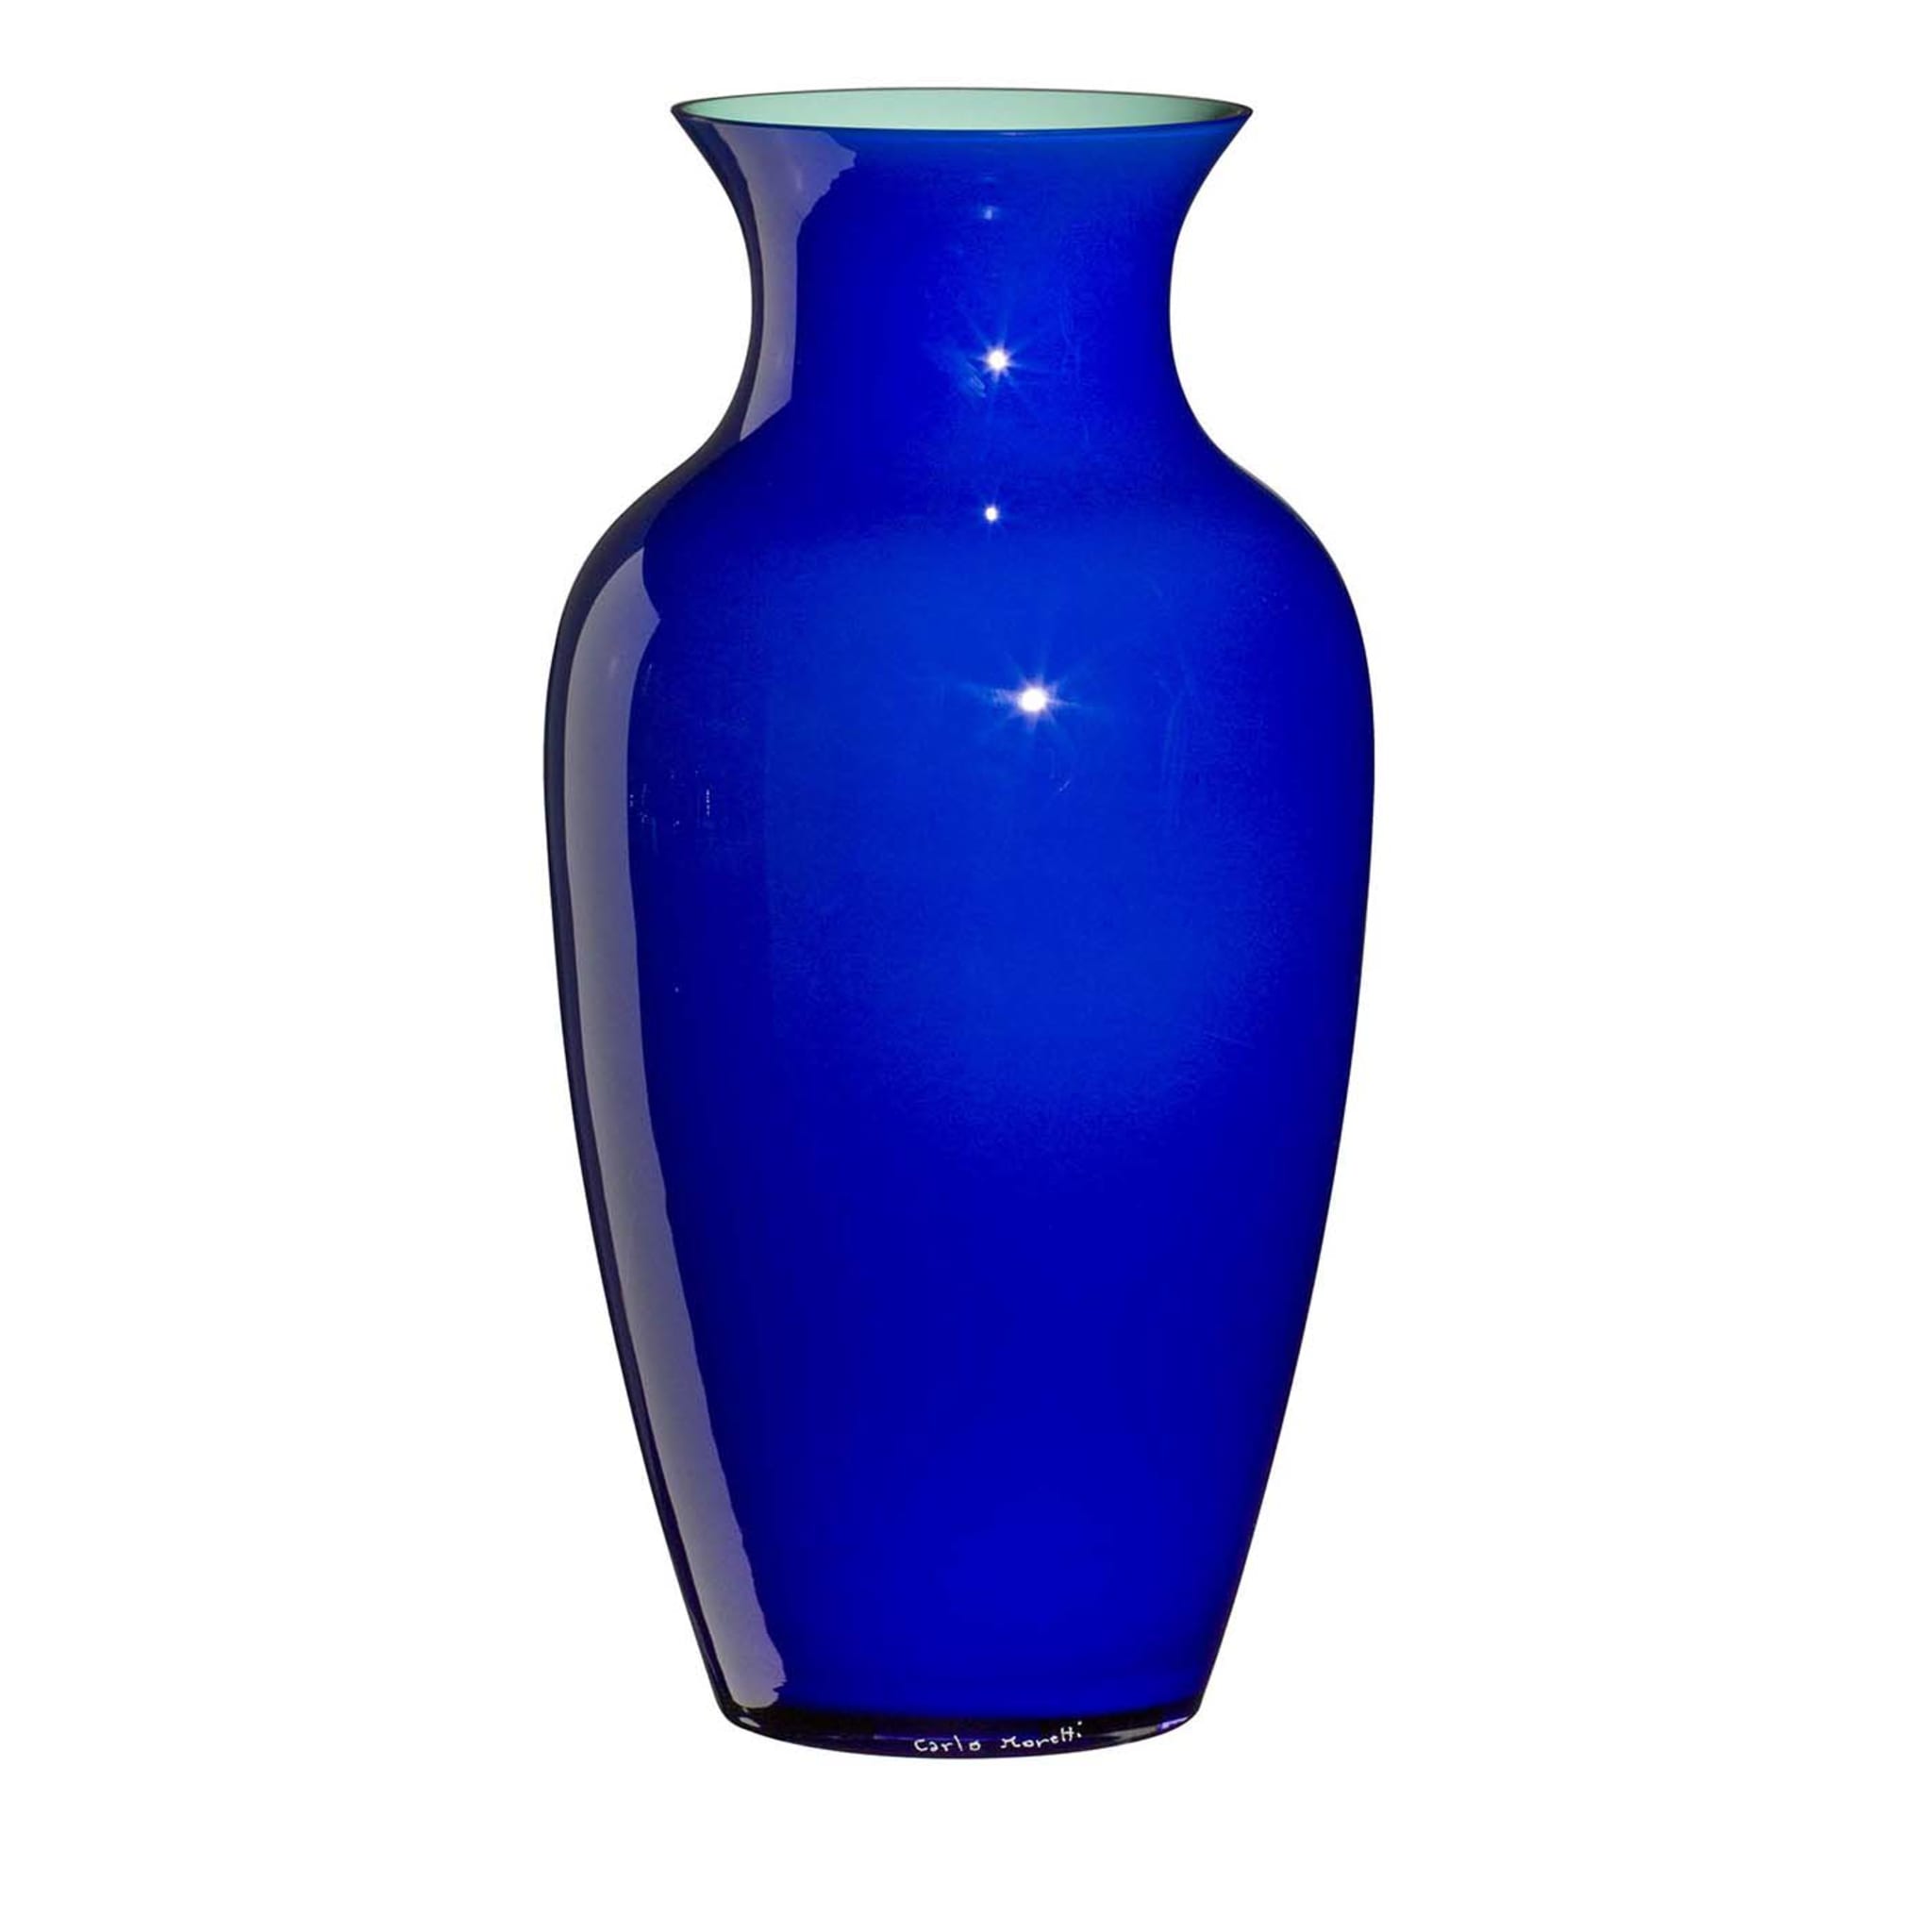 Blau-weiße Vase I Cinesi von Carlo Moretti - Hauptansicht